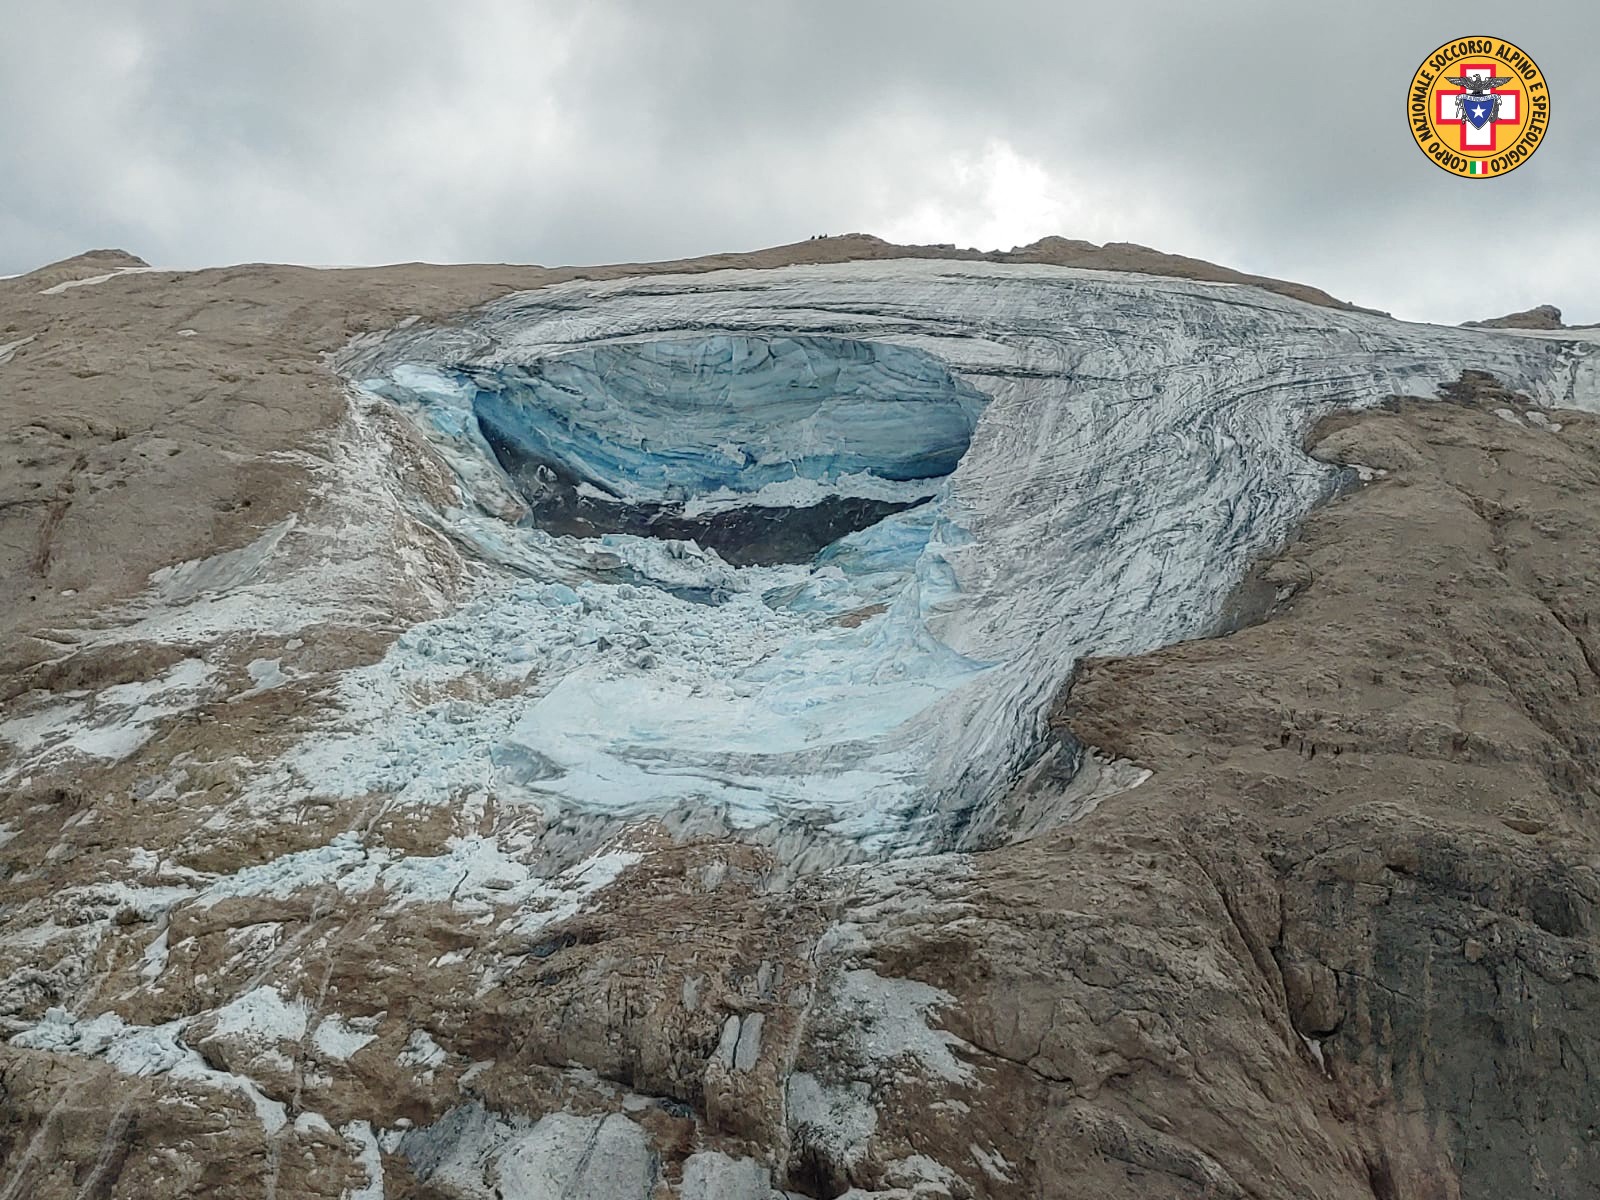 Geleira faz parte da montanha Marmolada, que tem cerca de 3.300 metros de altura e está situada na cordilheira das Dolomitas — Foto: SOCCORSO ALPINO / AFP